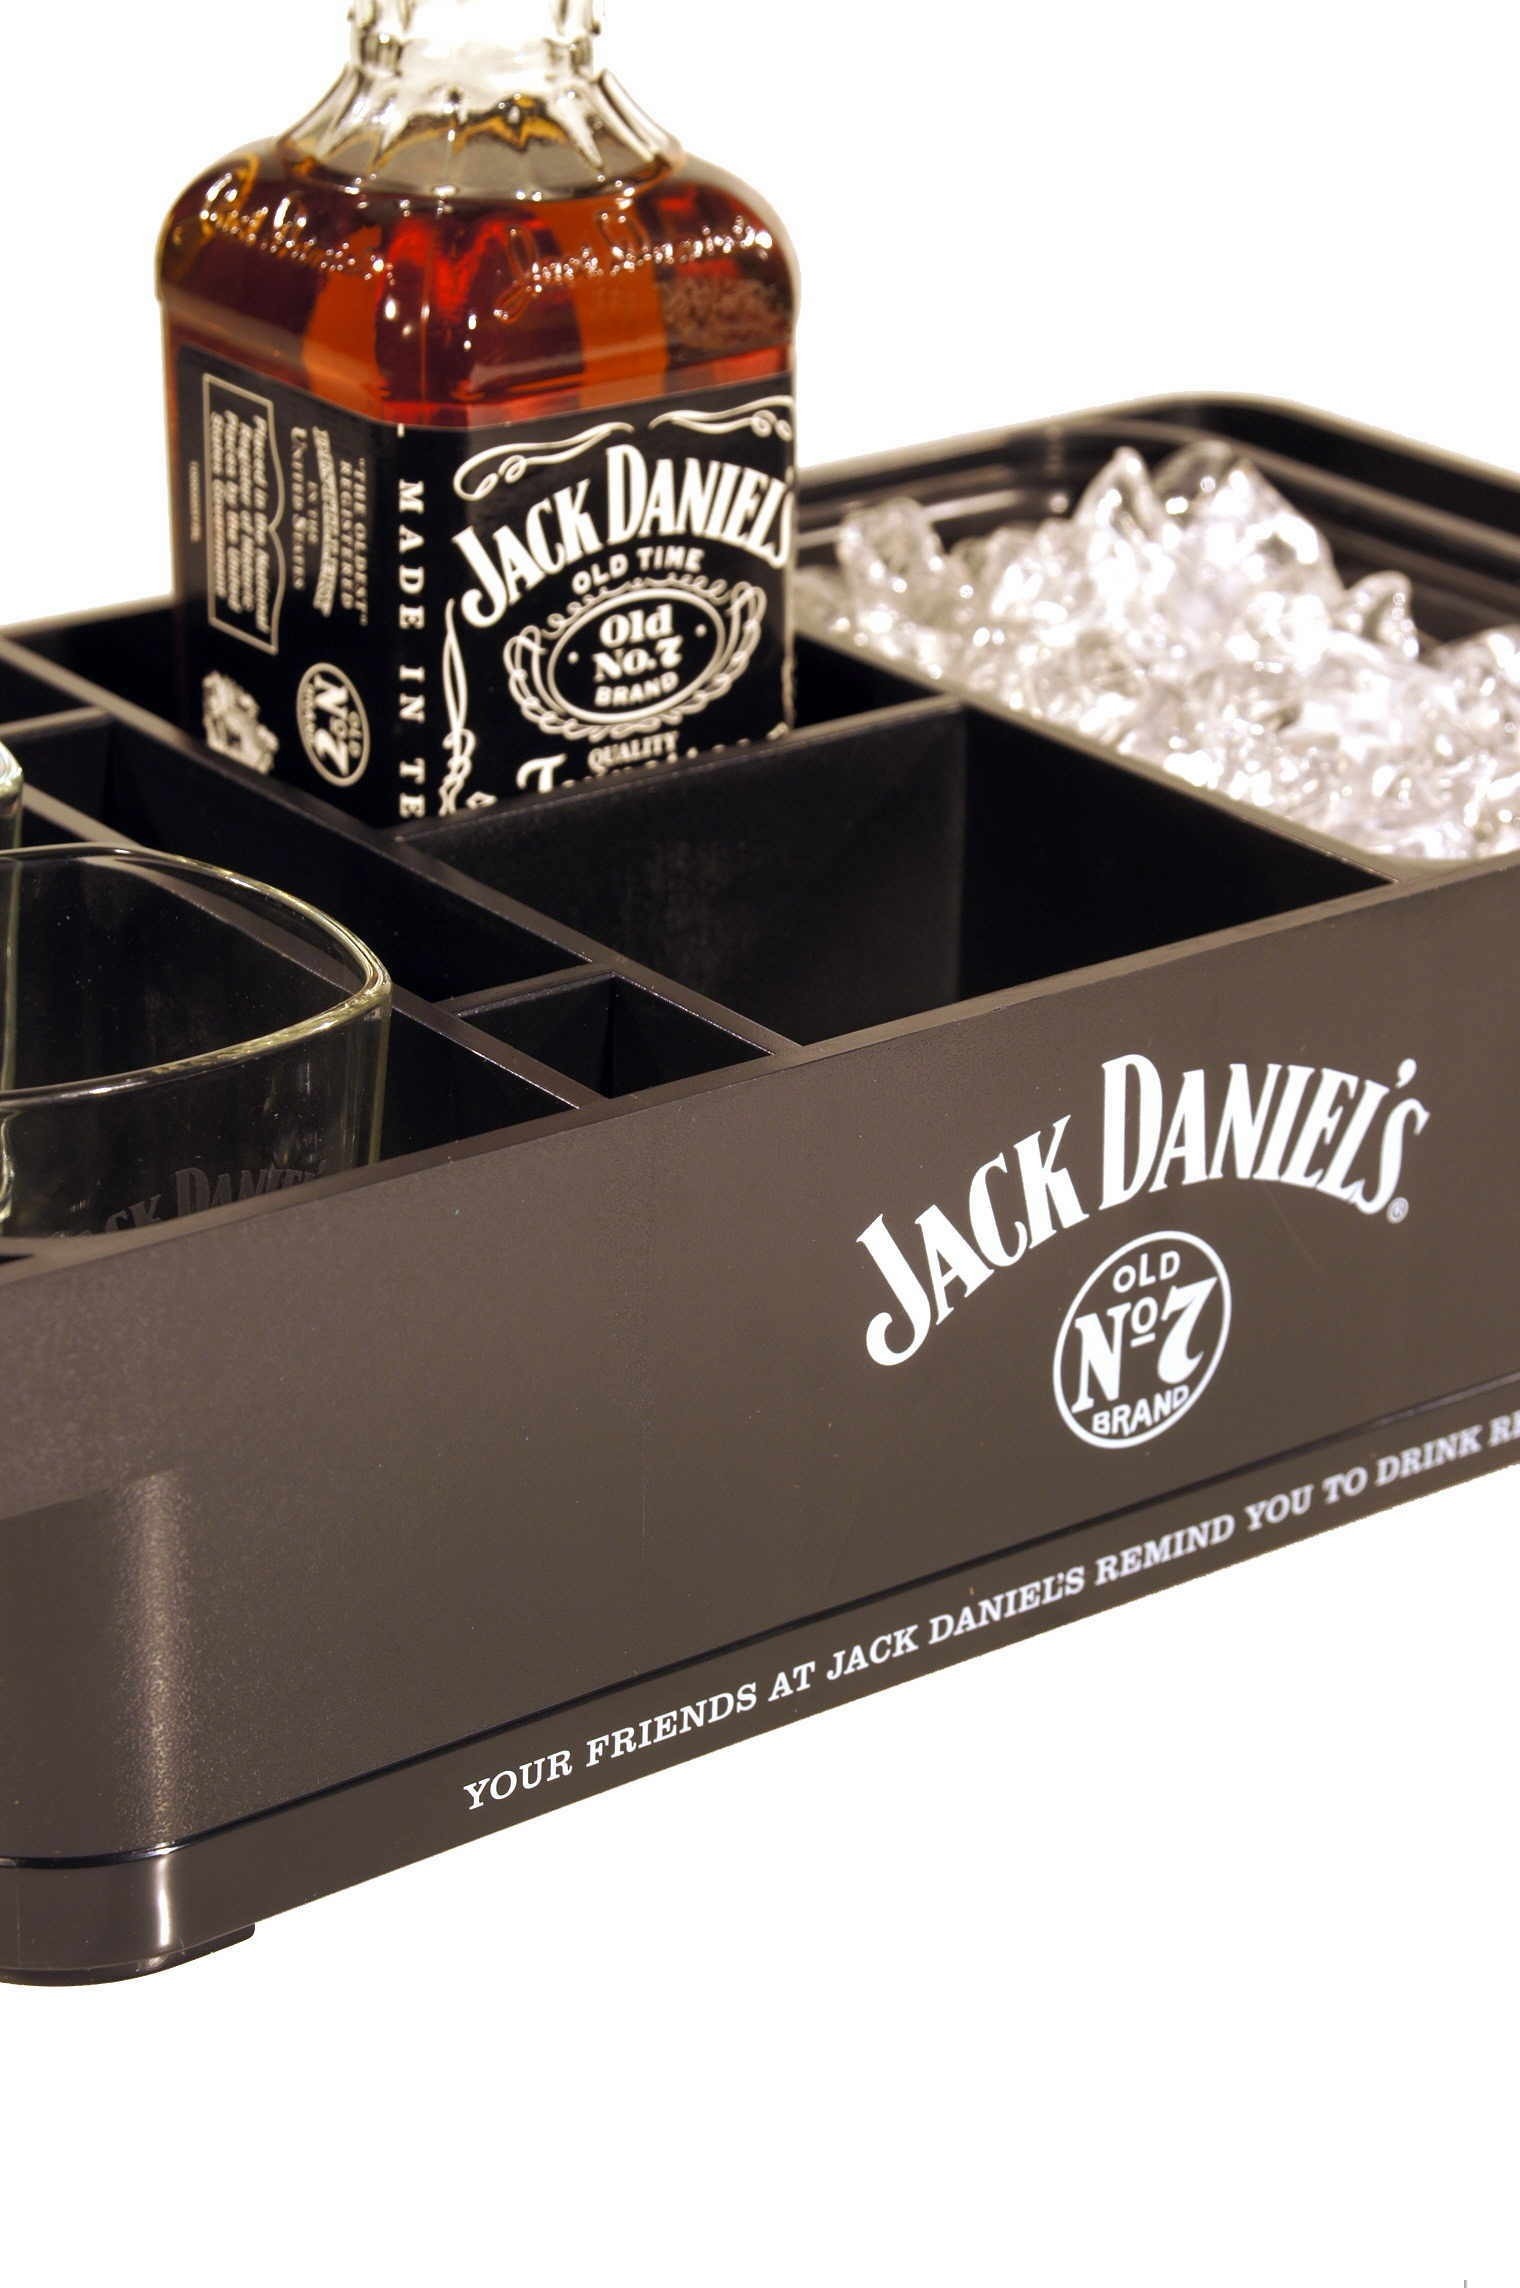 Jack daniels bar jack daniels table bar jack daniels serve